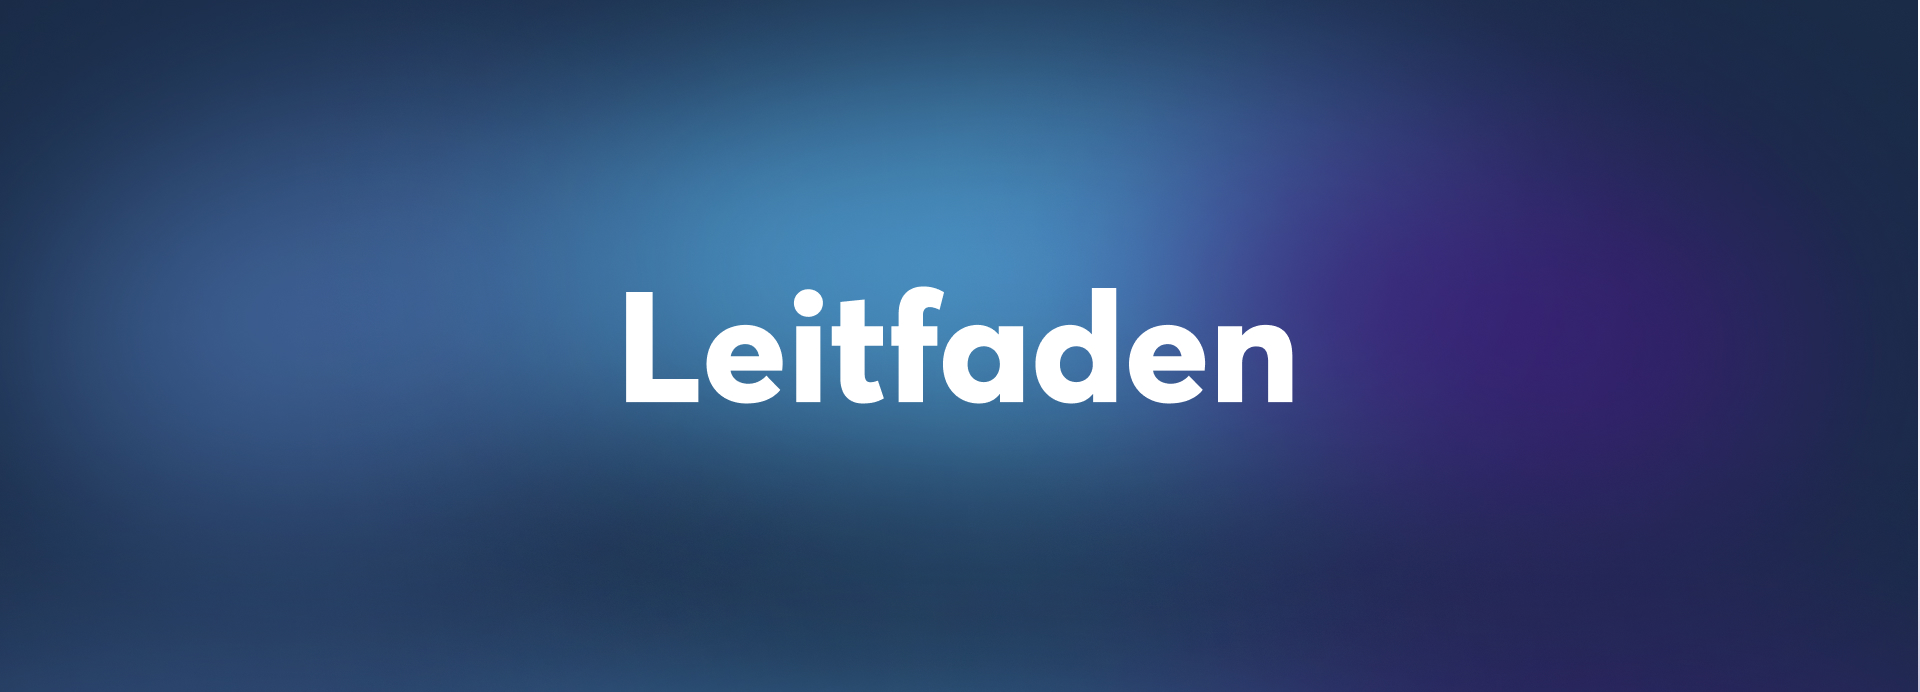 Leitfaden-label